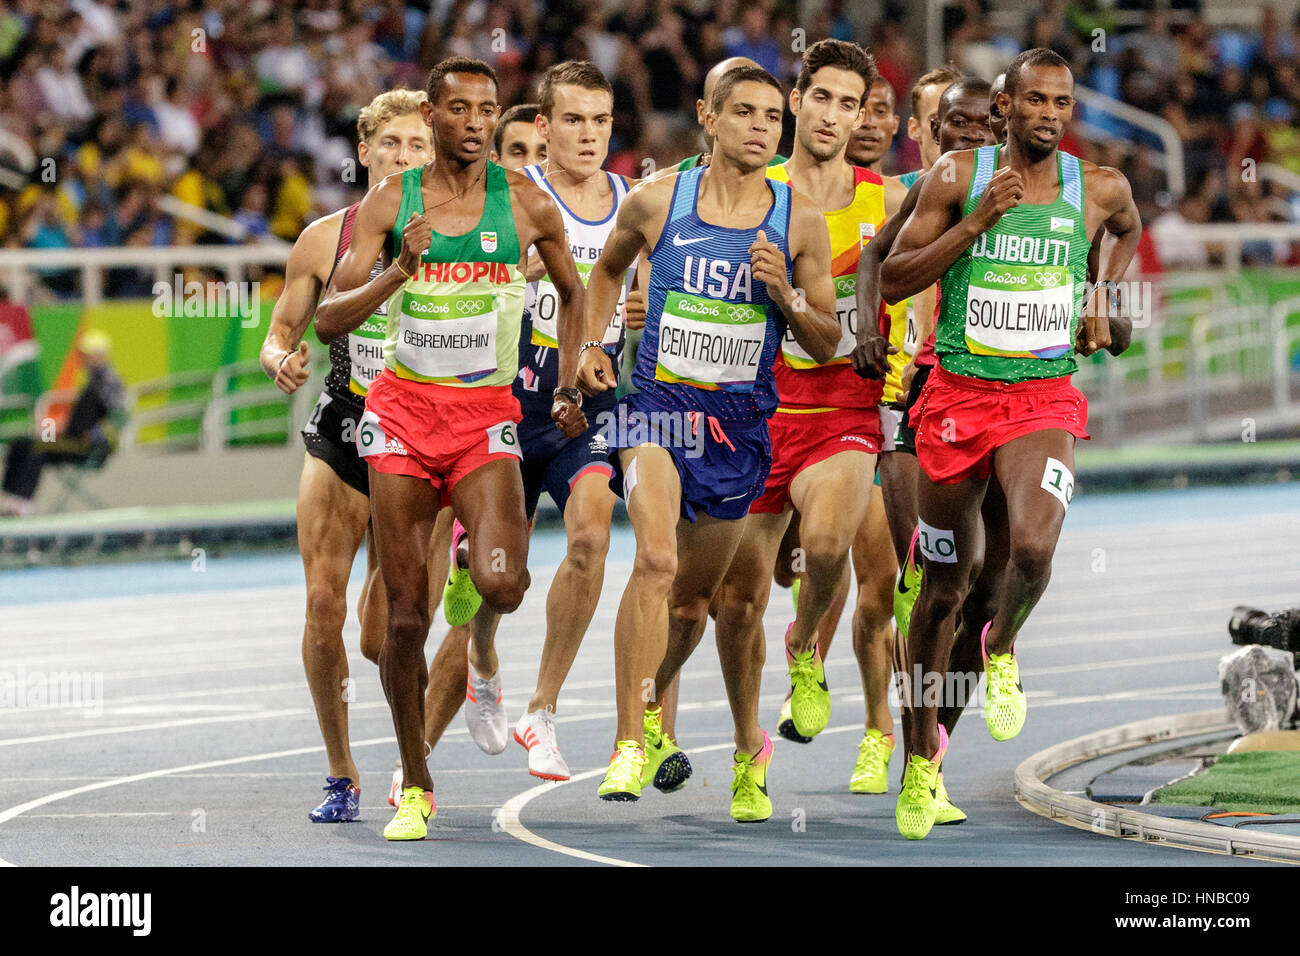 Rio de Janeiro, Brésil. 18 août 2016. L'athlétisme, Matthew Centrowitz (USA) en compétition dans l'épreuve du 1500m lors de la demi-finale des Jeux Olympiques d'été de 2016 Banque D'Images